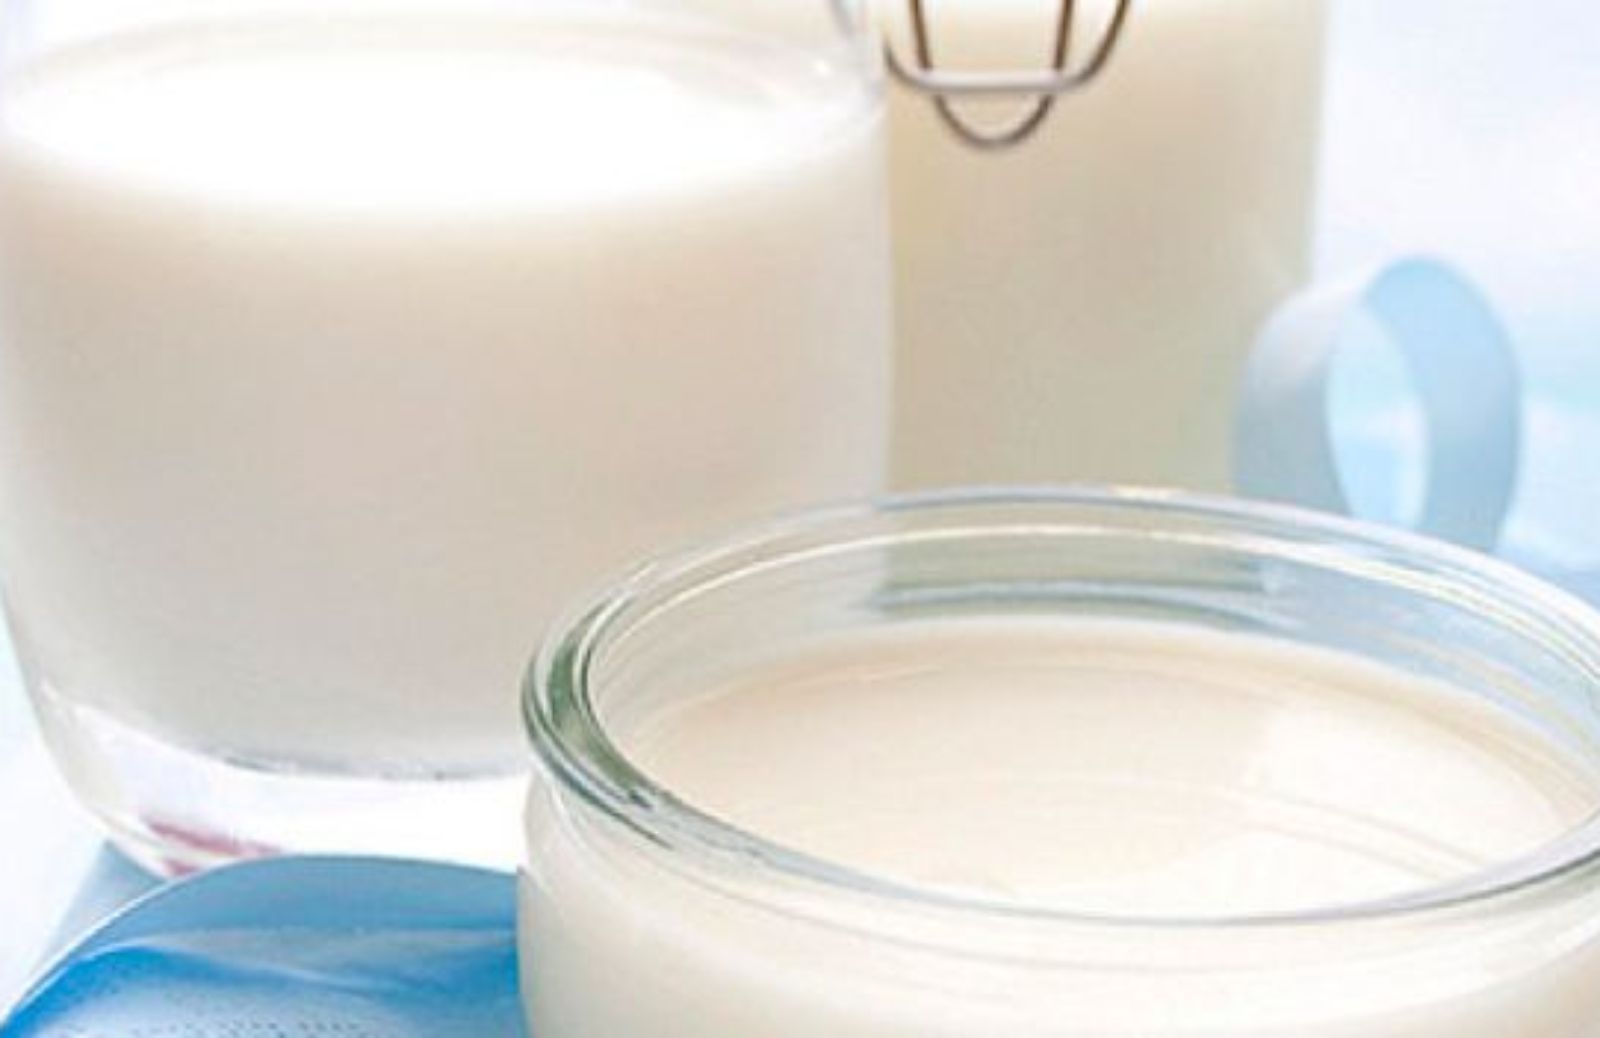 Come preparare il latte di mandorle in casa